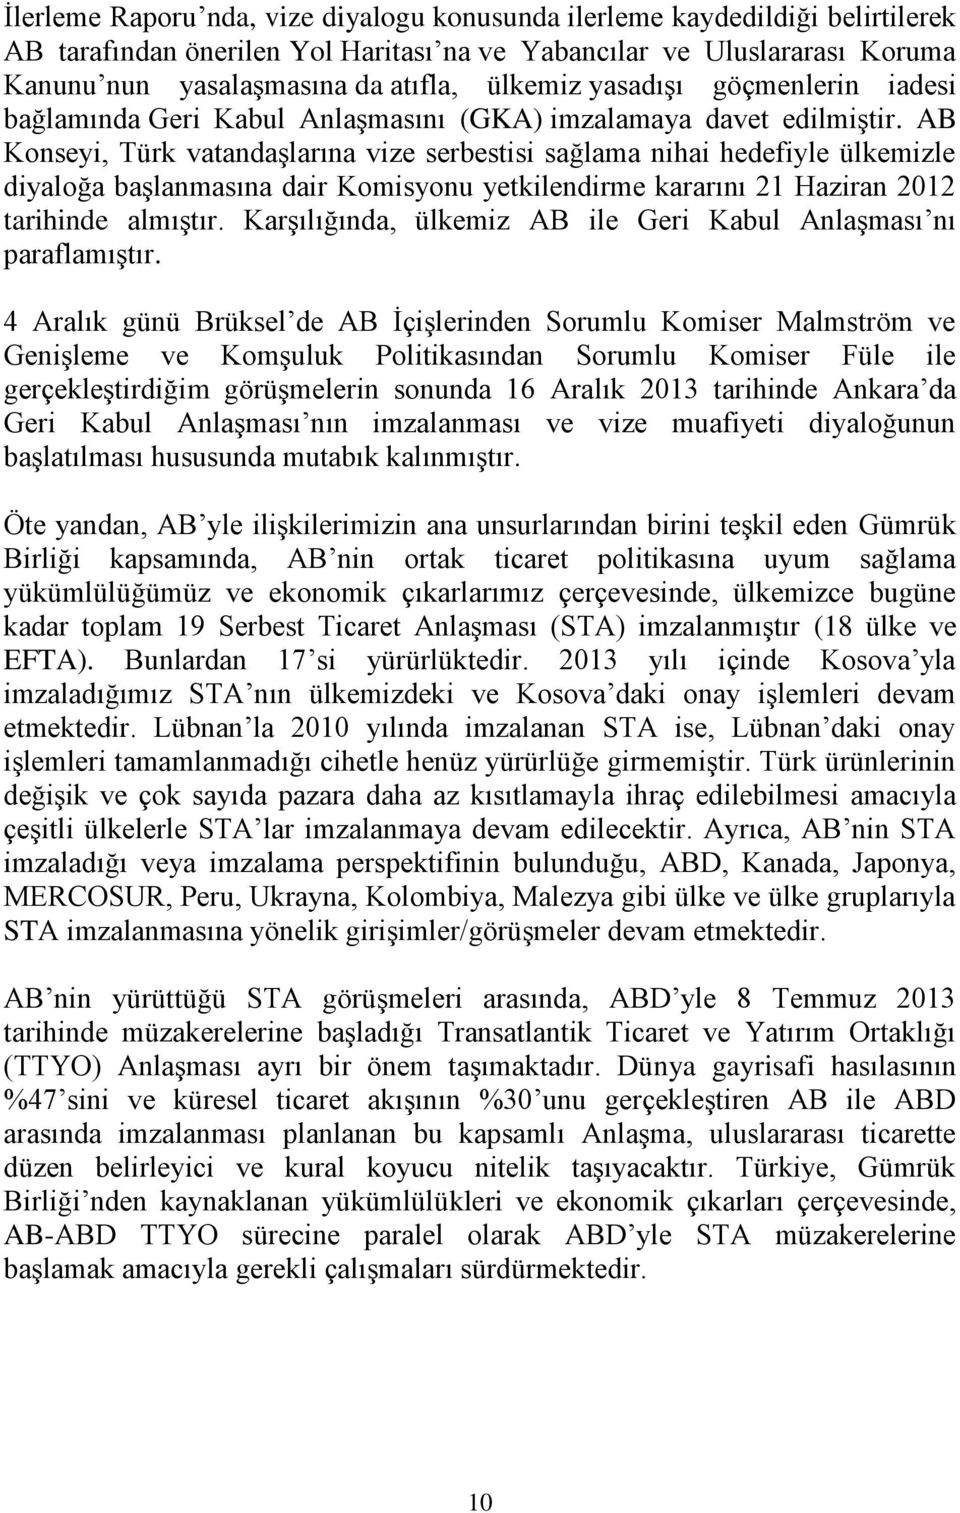 AB Konseyi, Türk vatandaşlarına vize serbestisi sağlama nihai hedefiyle ülkemizle diyaloğa başlanmasına dair Komisyonu yetkilendirme kararını 21 Haziran 2012 tarihinde almıştır.